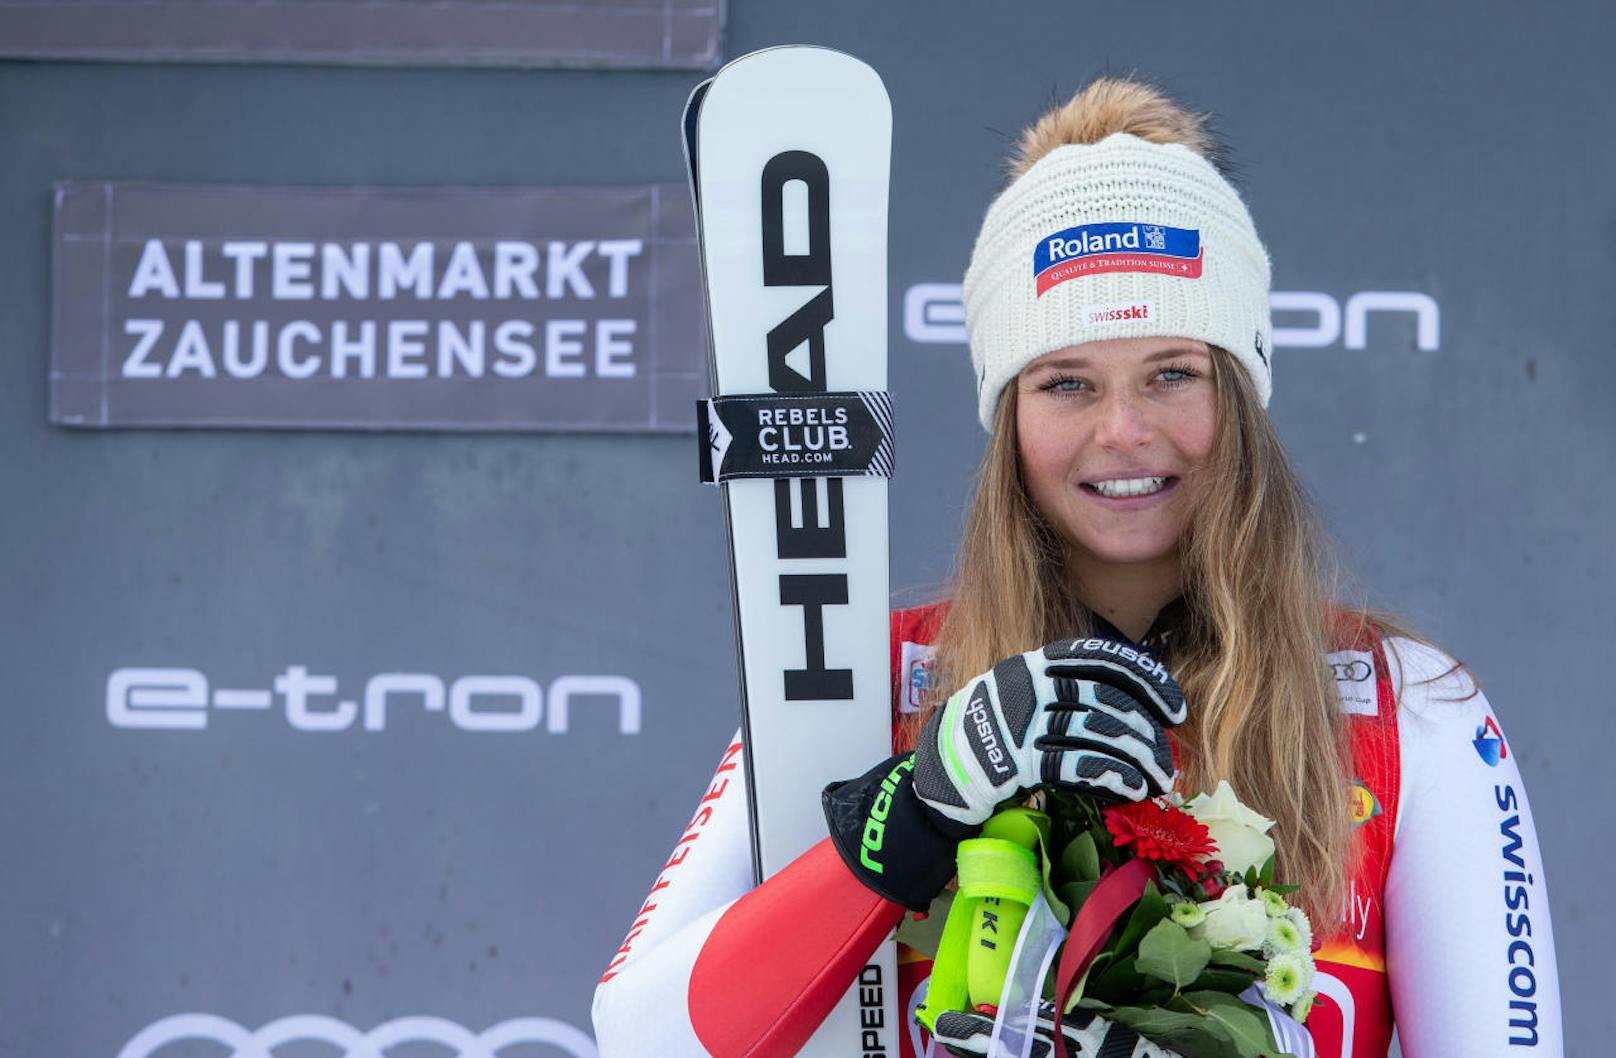 Mitte Jänner machte der Ski-Weltcup in Altenmarkt-Zauchensee Halt. Corinne Suter (Sz) raste in der Abfahrt zum Sieg. Beste ÖSV-Dame: Stephanie Venier als Neunte.